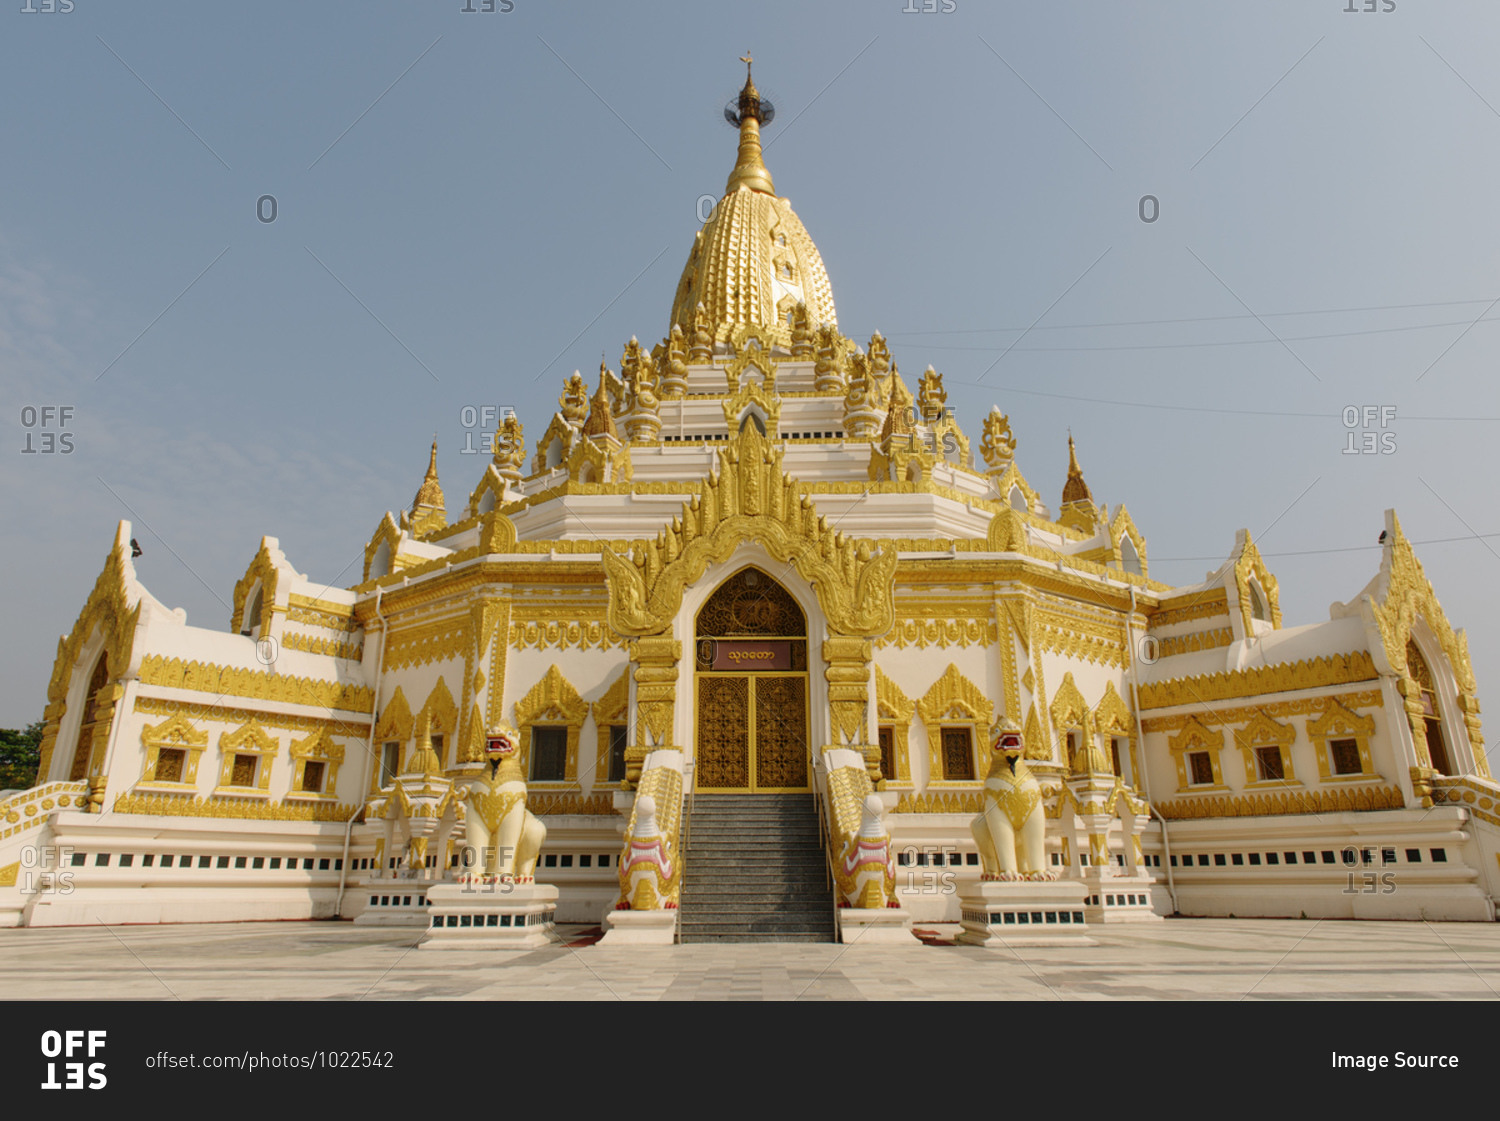 Shwe Daw Temple in Yangan, Burma